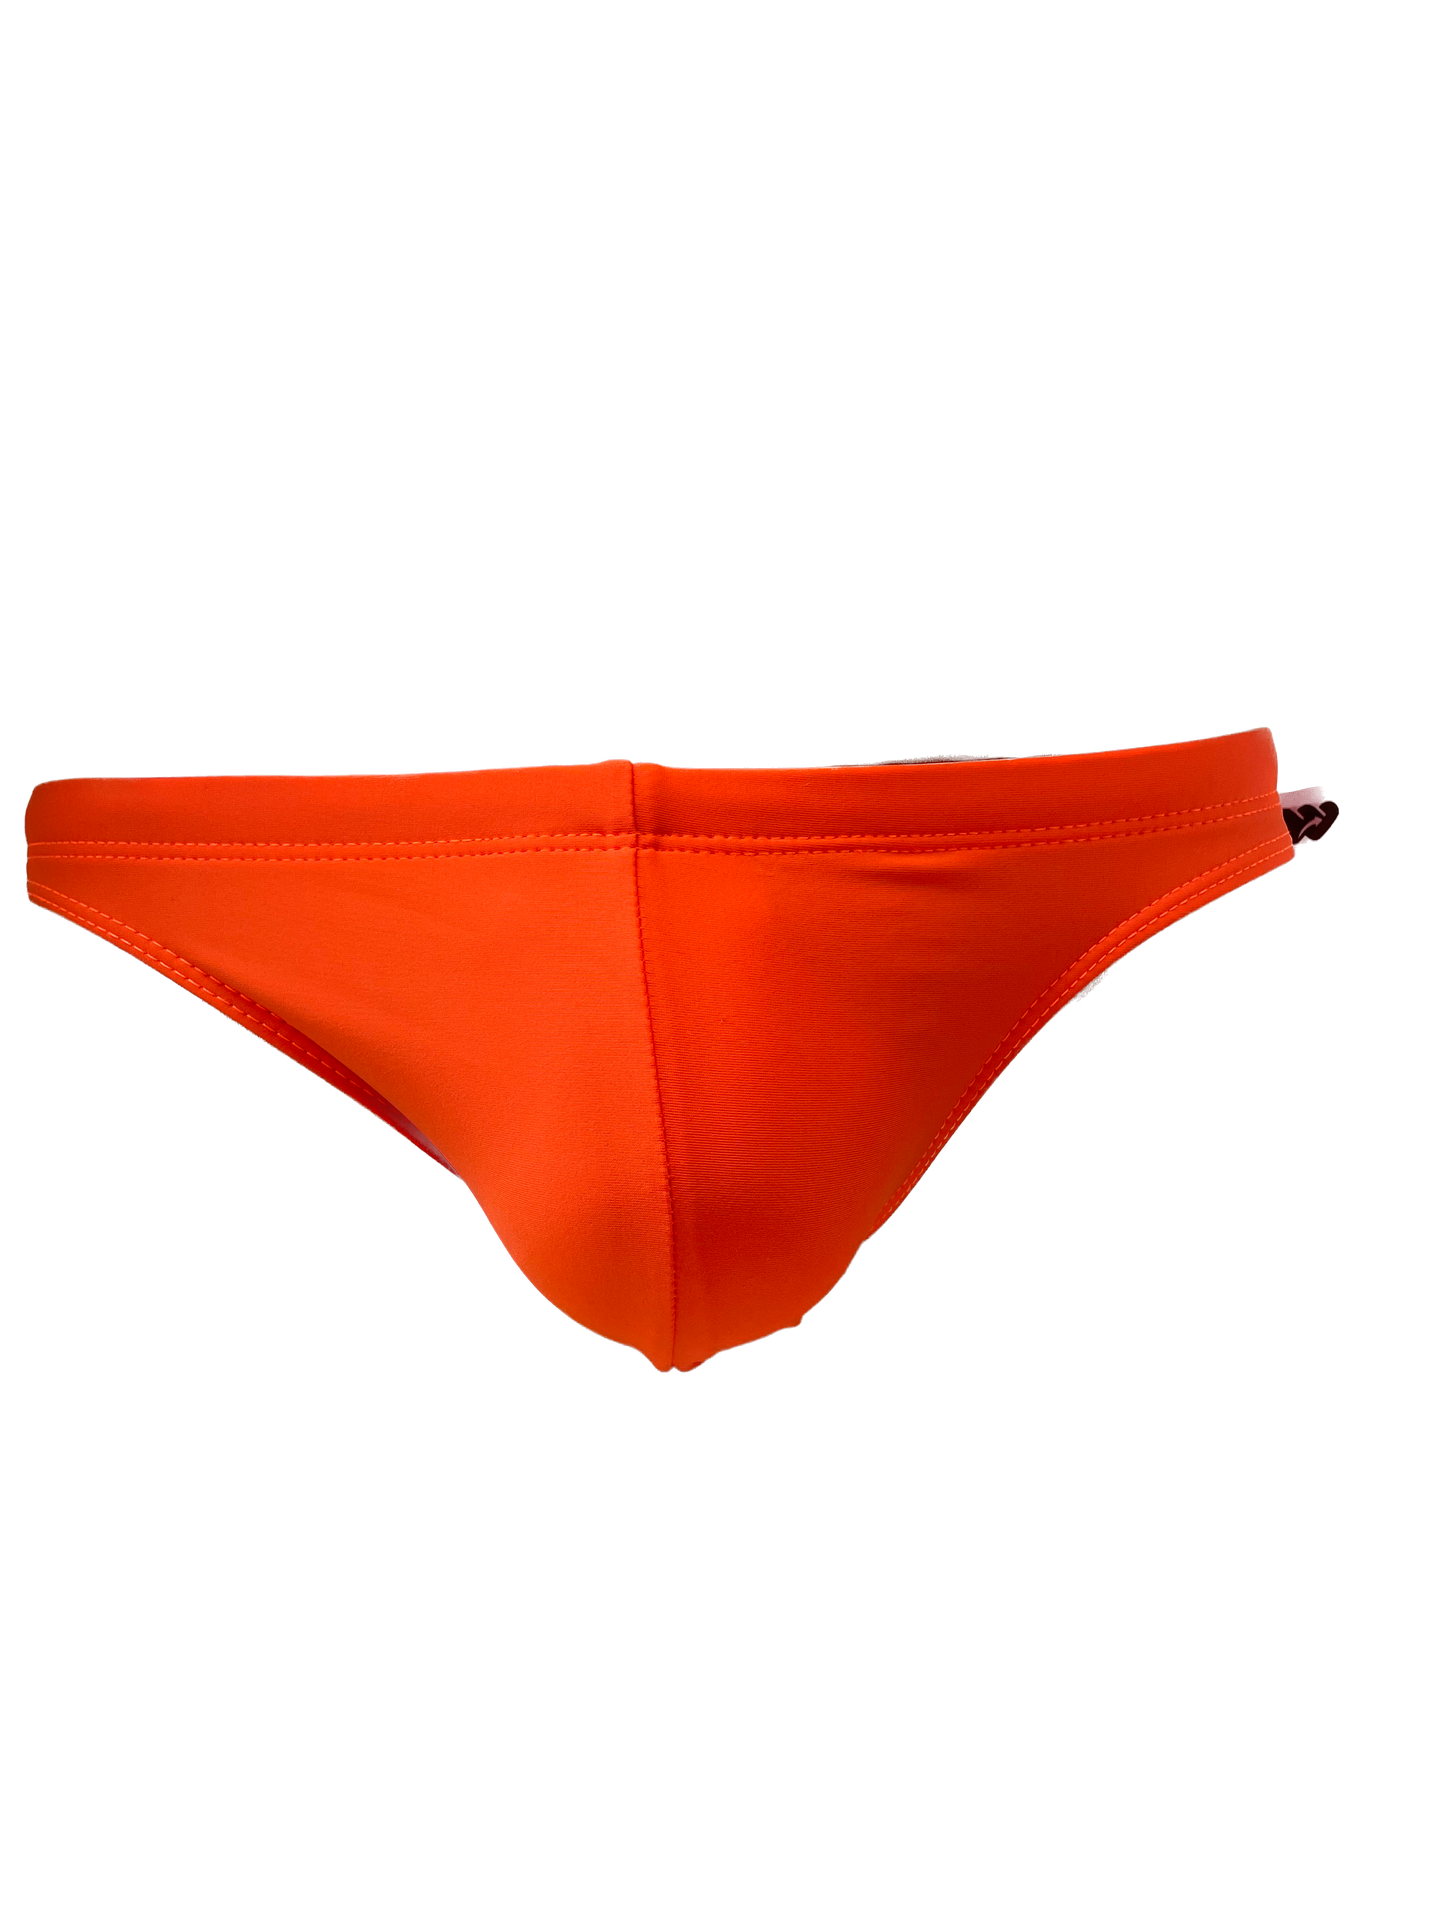 Men's Classic Side Swim Mini Briefs, Solid Color